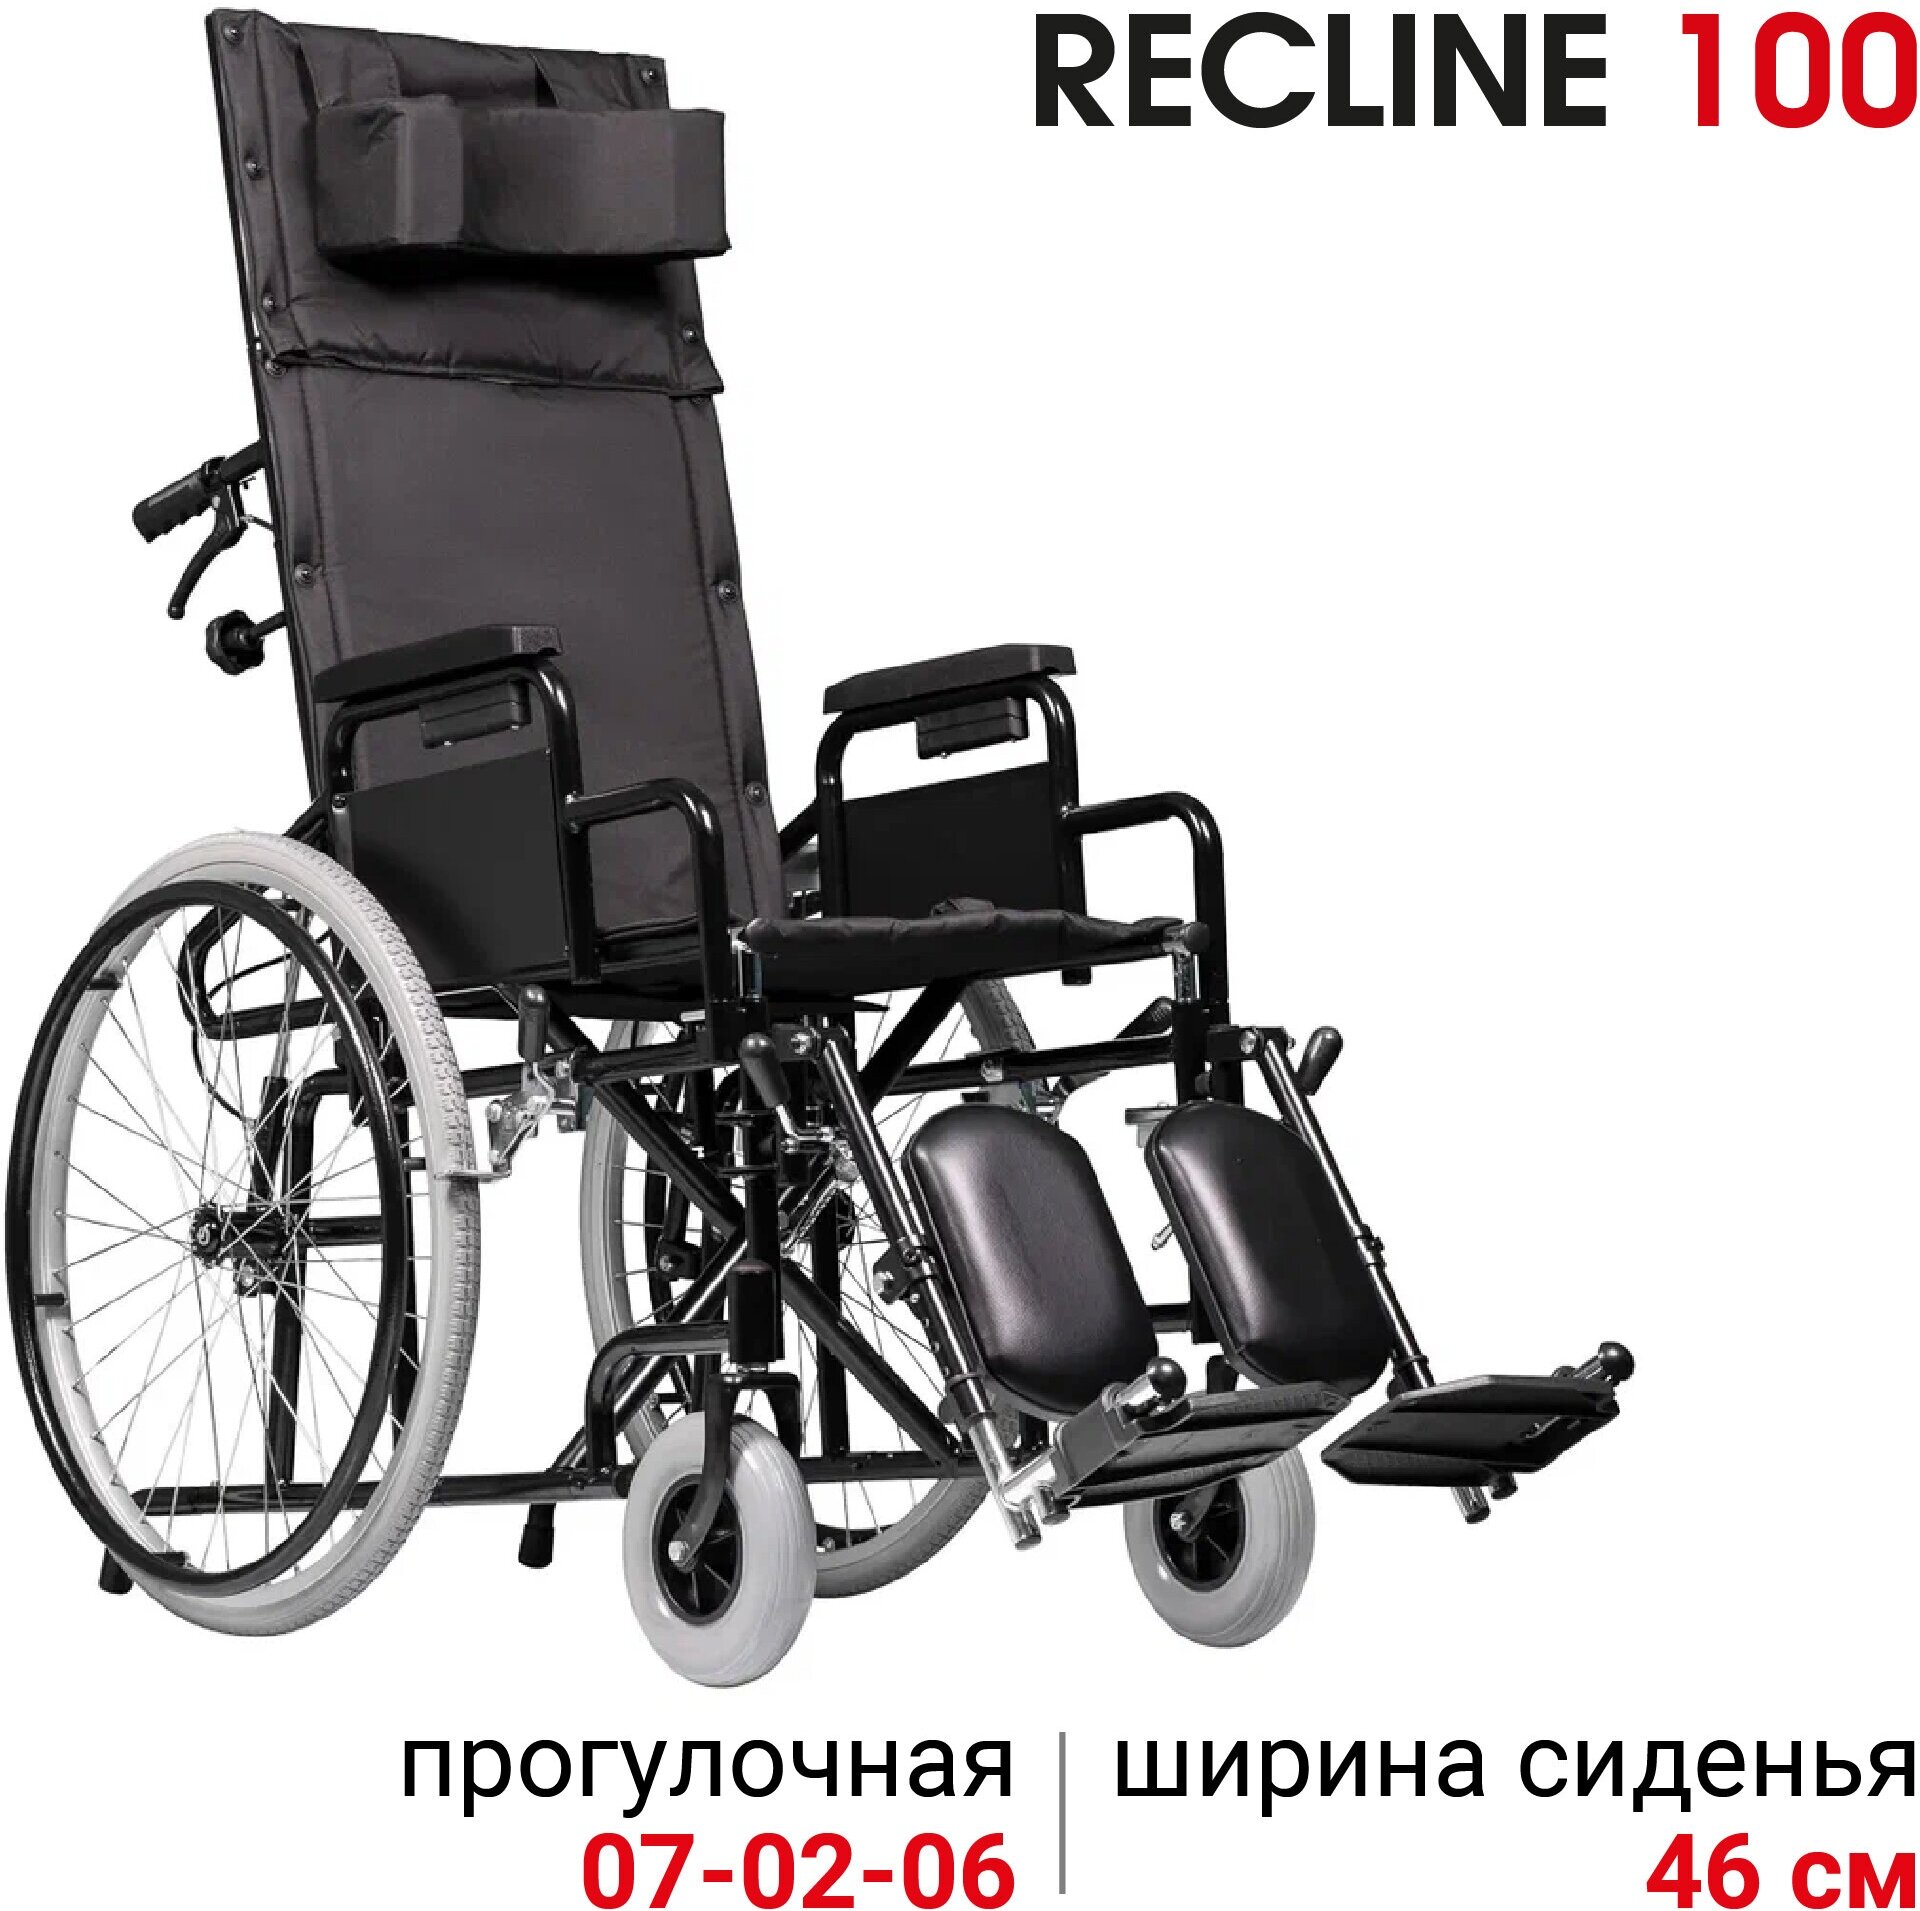 Кресло-коляска механическое с подголовником Ortonica Base 155/Recline 100 ширина сиденья 46 см передние литые, задние пневматические колеса Код 7-02-05, 7-02-06